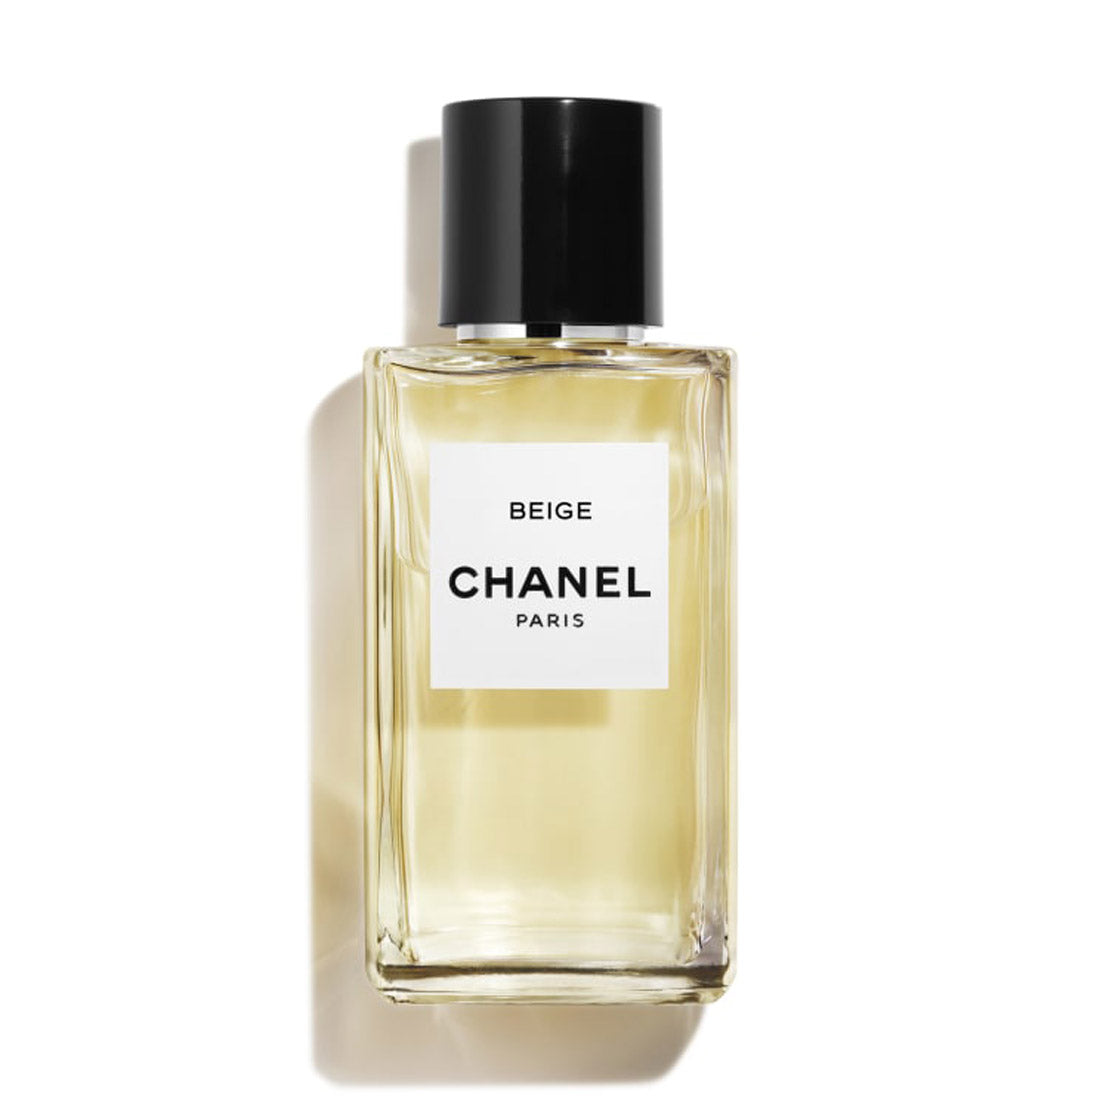 Chanel Paris Beige Les Exclusifs De Chanel Eau de Parfum